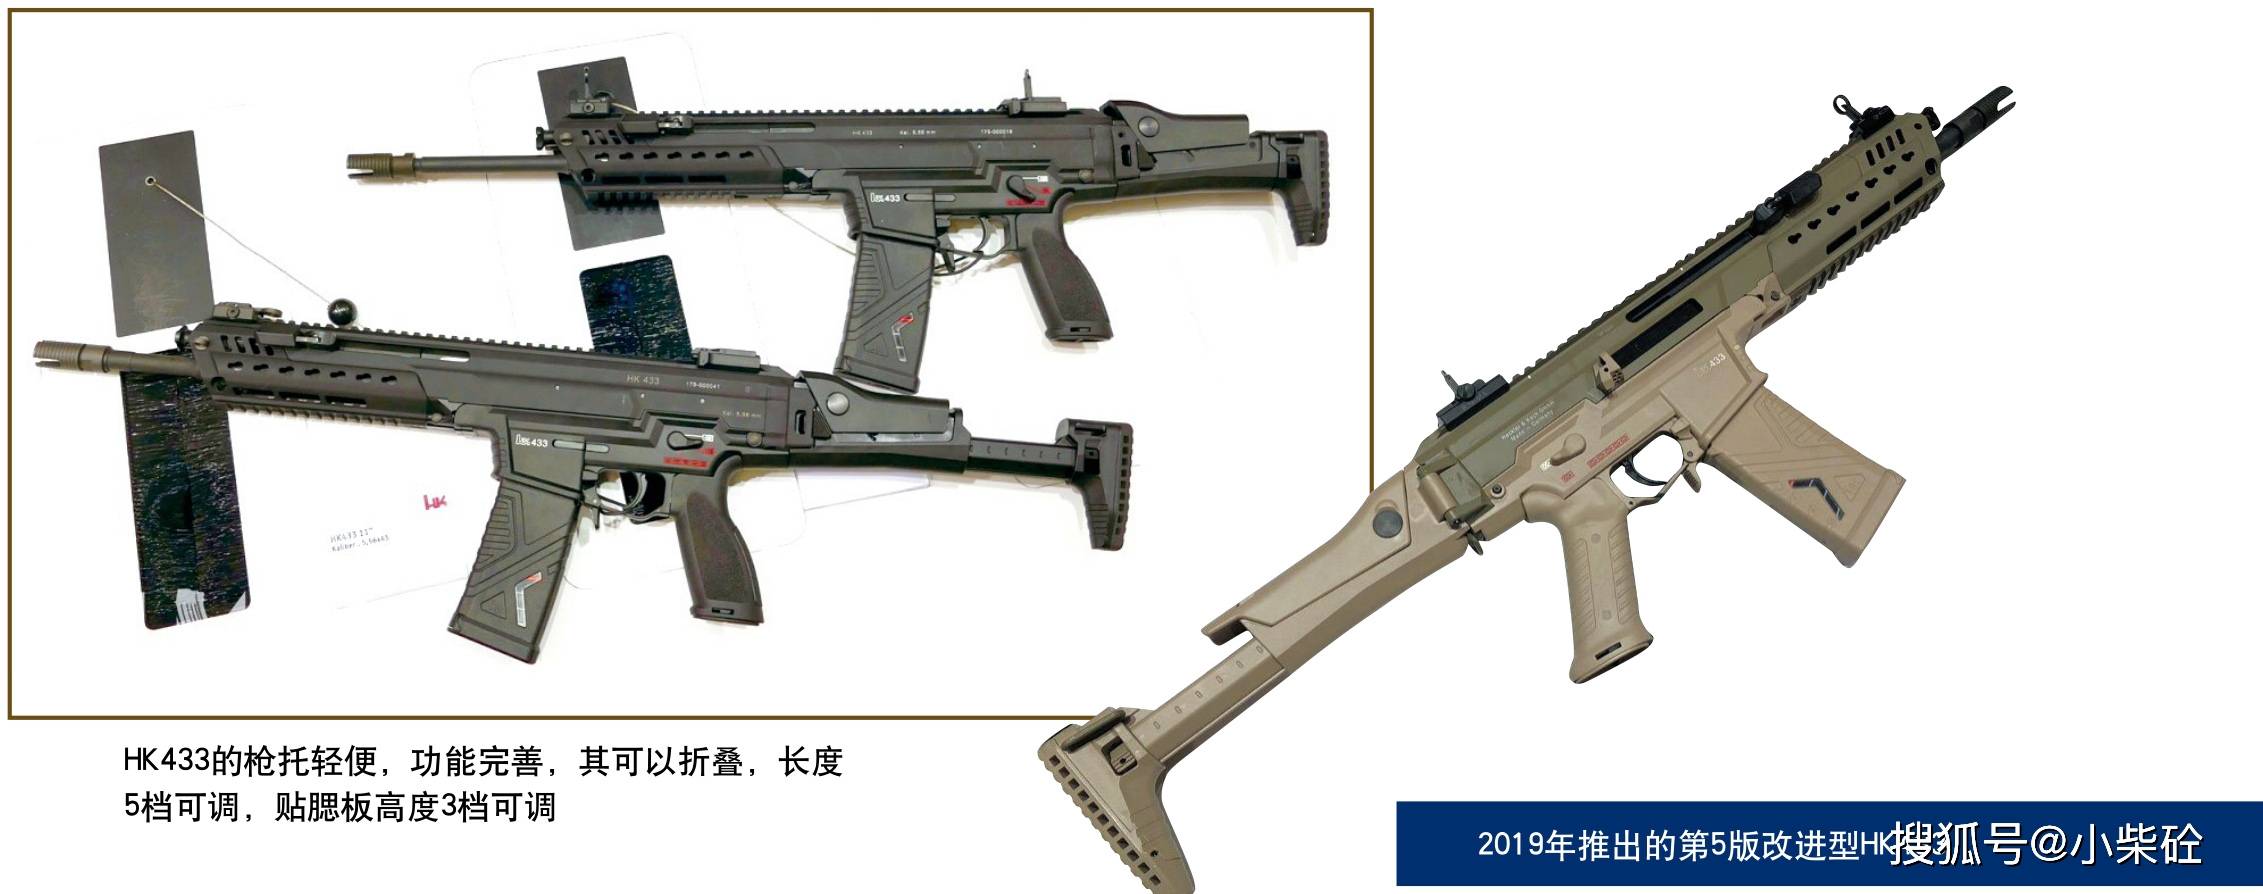 原创德国新一代步枪选型之谜:hk416/433与mk556比拼